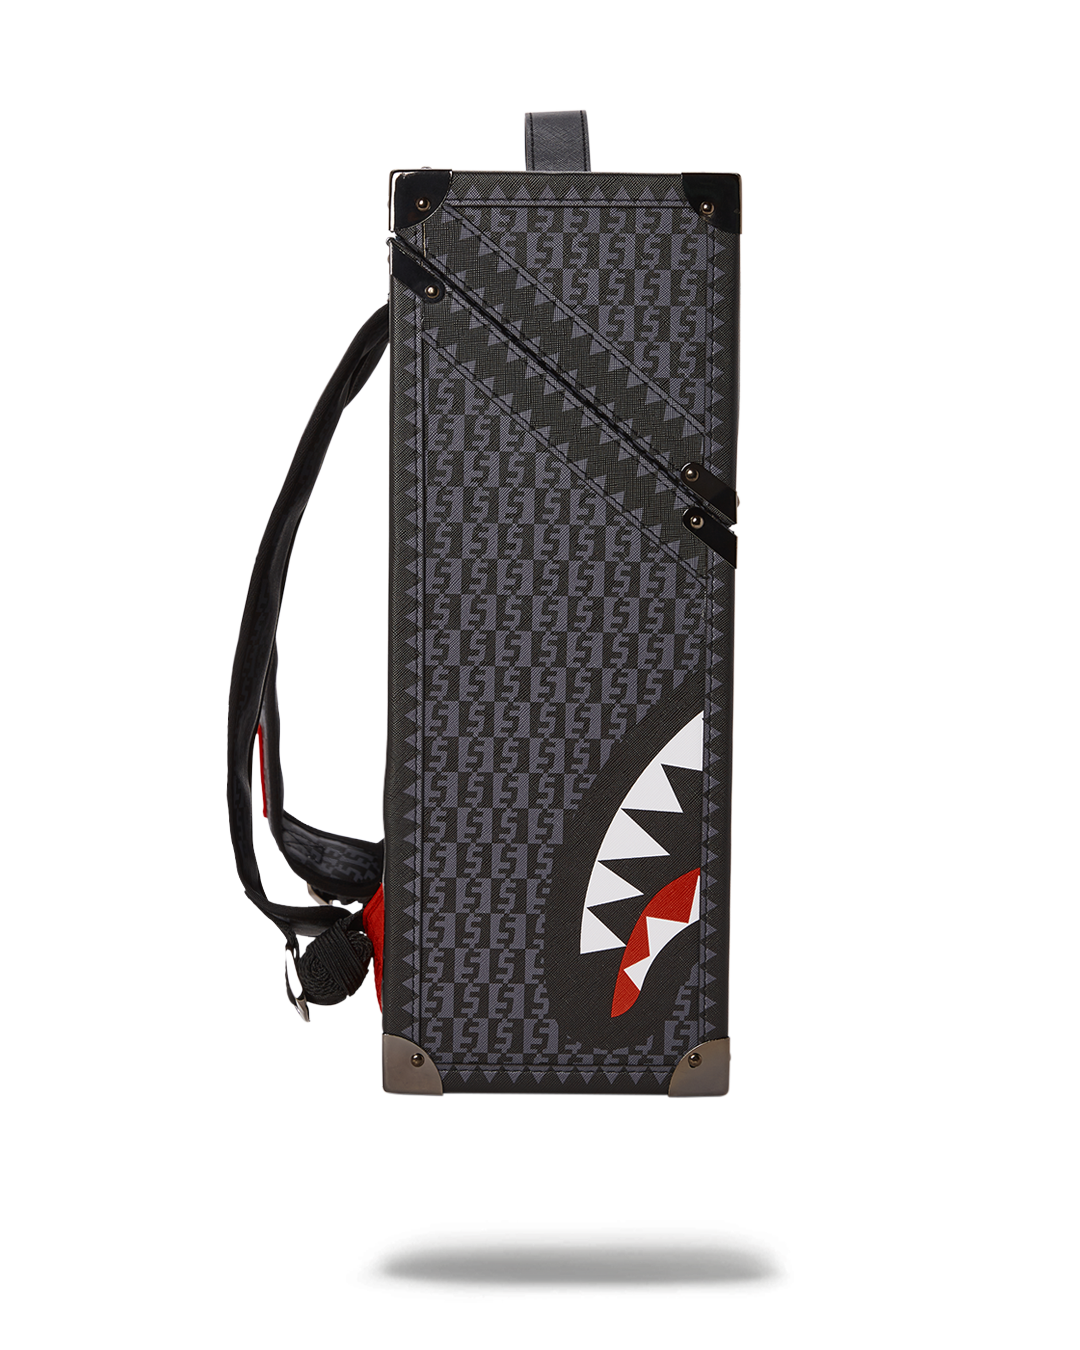 Sprayground Chaturanga Shark 1900 Backpack Like - Depop